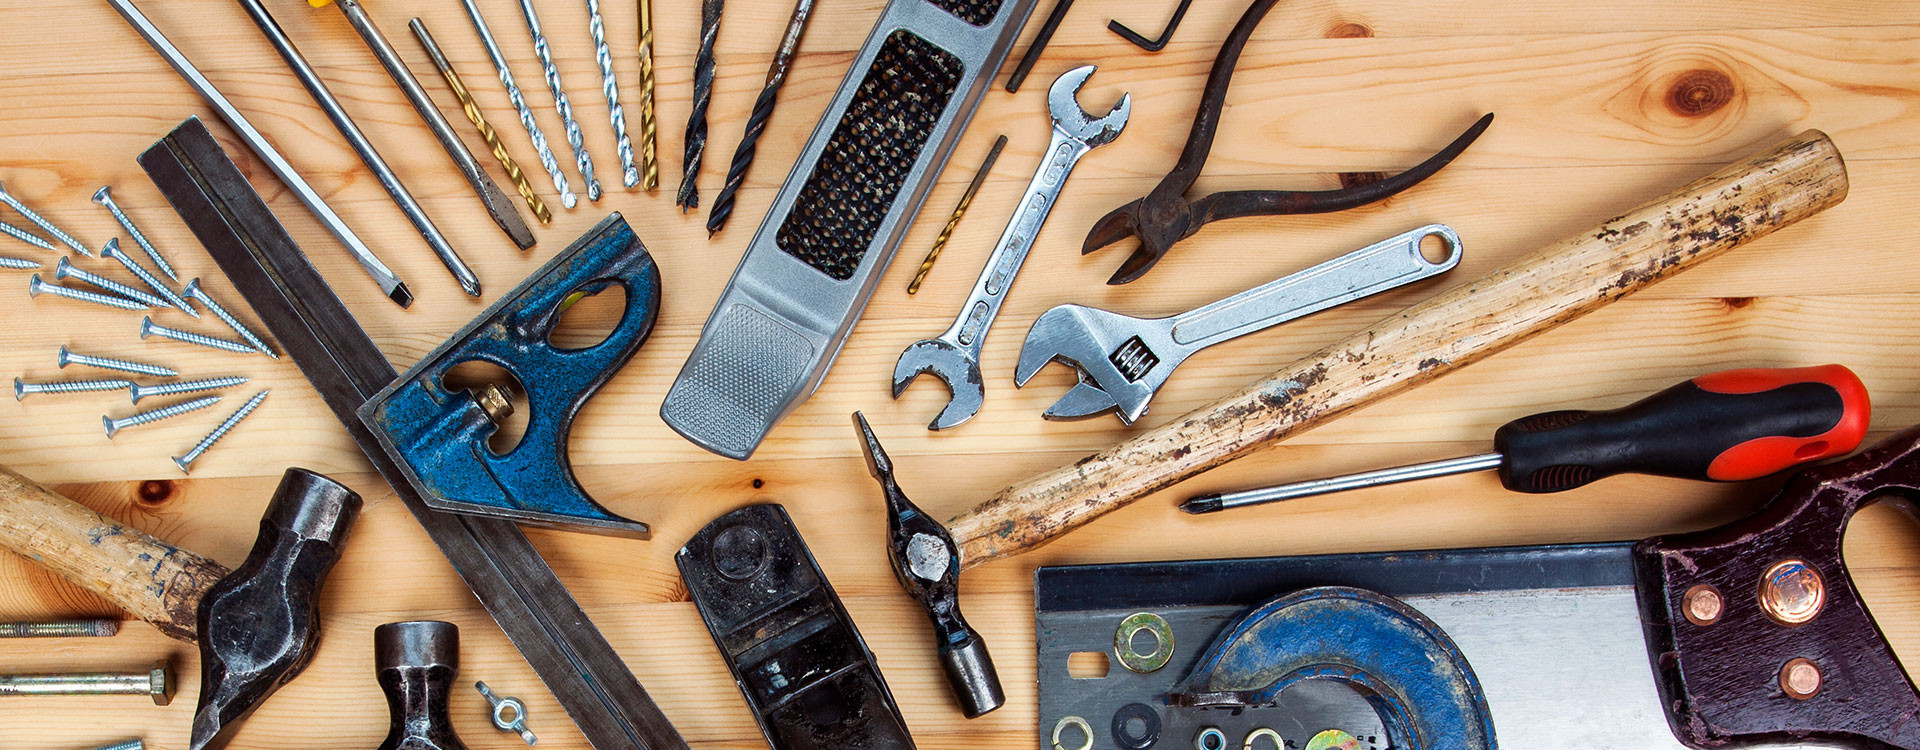 Estas son las 10 herramientas básicas para bricolaje